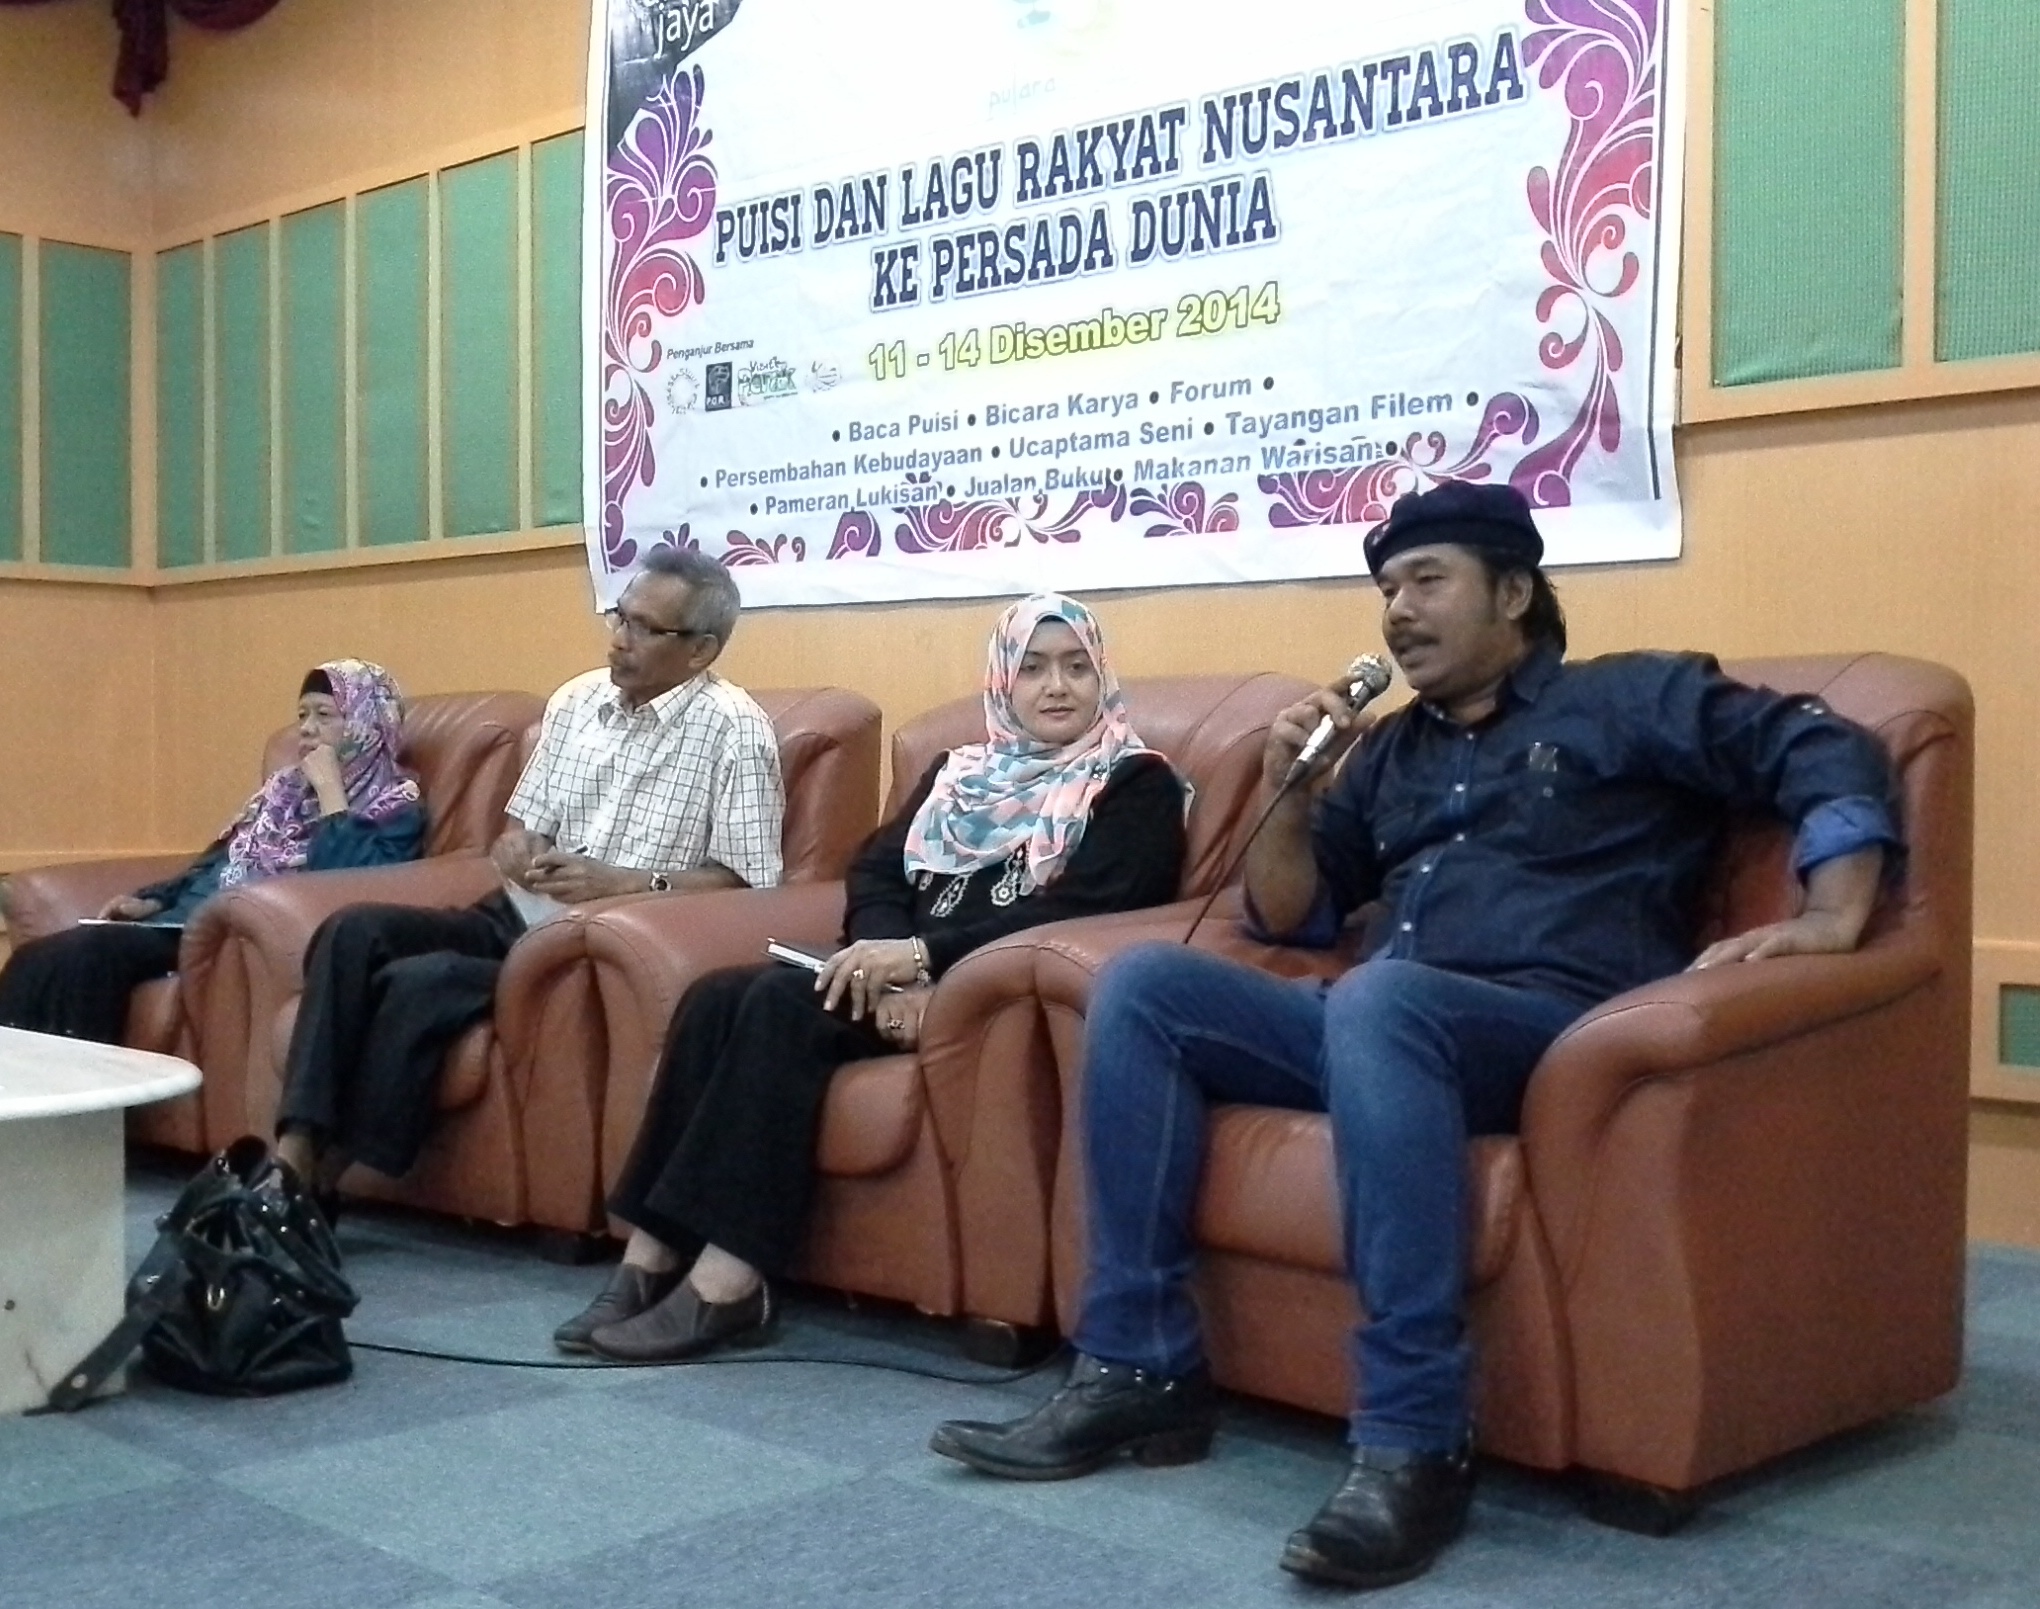 Forum yang membincangkan cara-cara mengantarabangsakan lagu rakyat dan puisi Melayu tradisional.